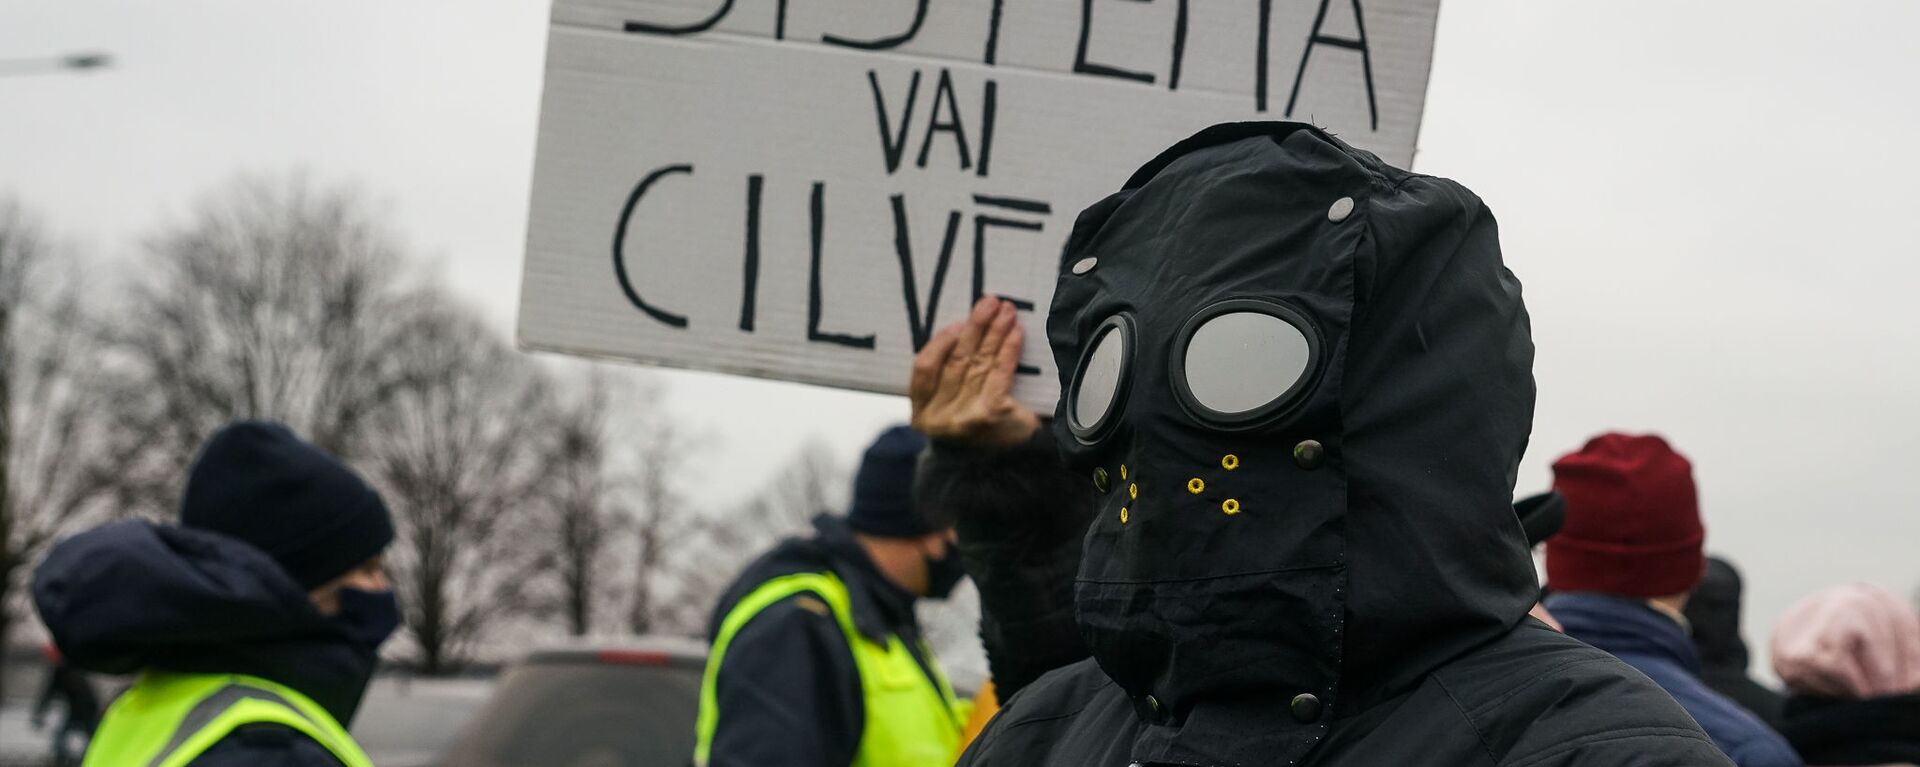 Плакат Система или человек. Акция протеста на набережной 11 Ноября в Риге против ограничений в связи с пандемией COVID-19 - Sputnik Латвия, 1920, 08.07.2021